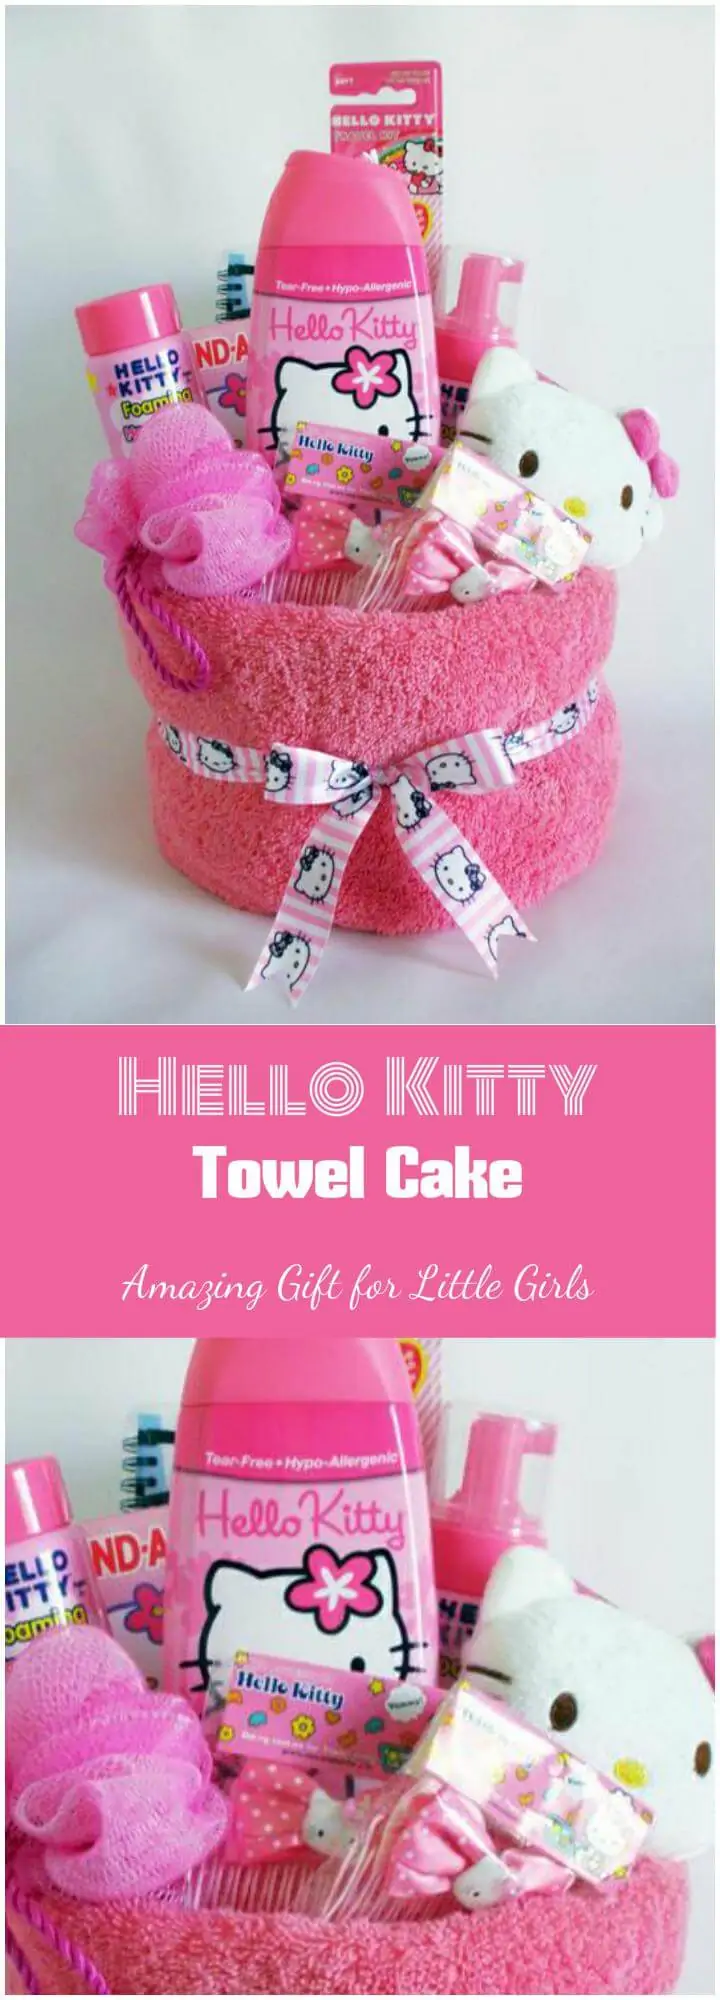 Magnífico pastel de toalla de Hello Kitty o canasta de regalo